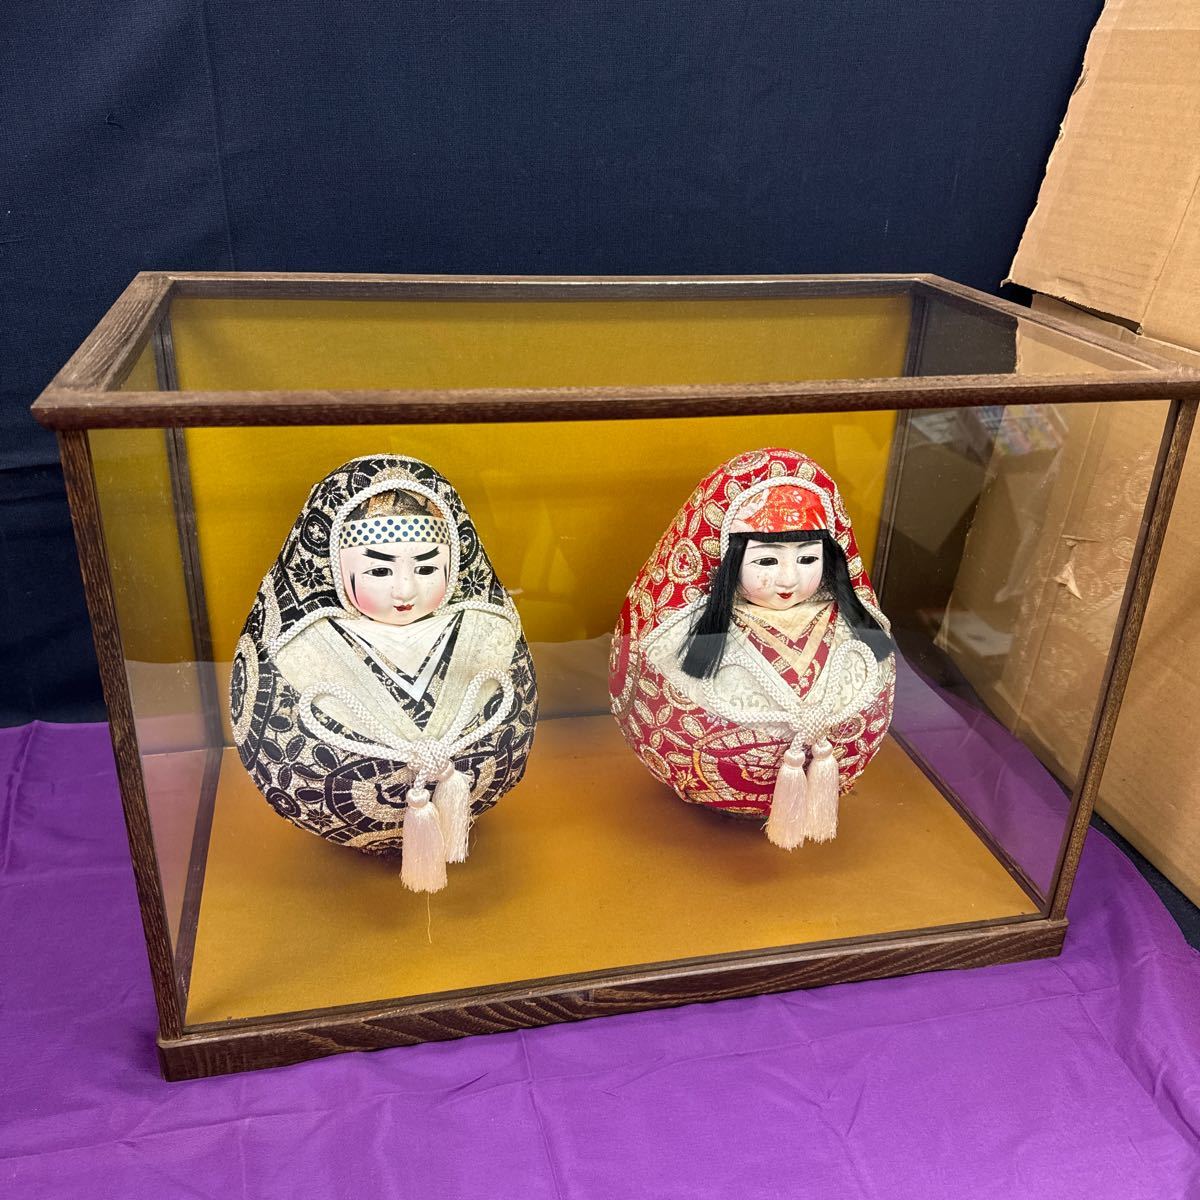 ◆二手日本娃娃雏娃娃达摩公主达摩系列玻璃盒含装饰品日式室内昭和复古 142-36, 玩具娃娃, 人物娃娃, 日本娃娃, 其他的